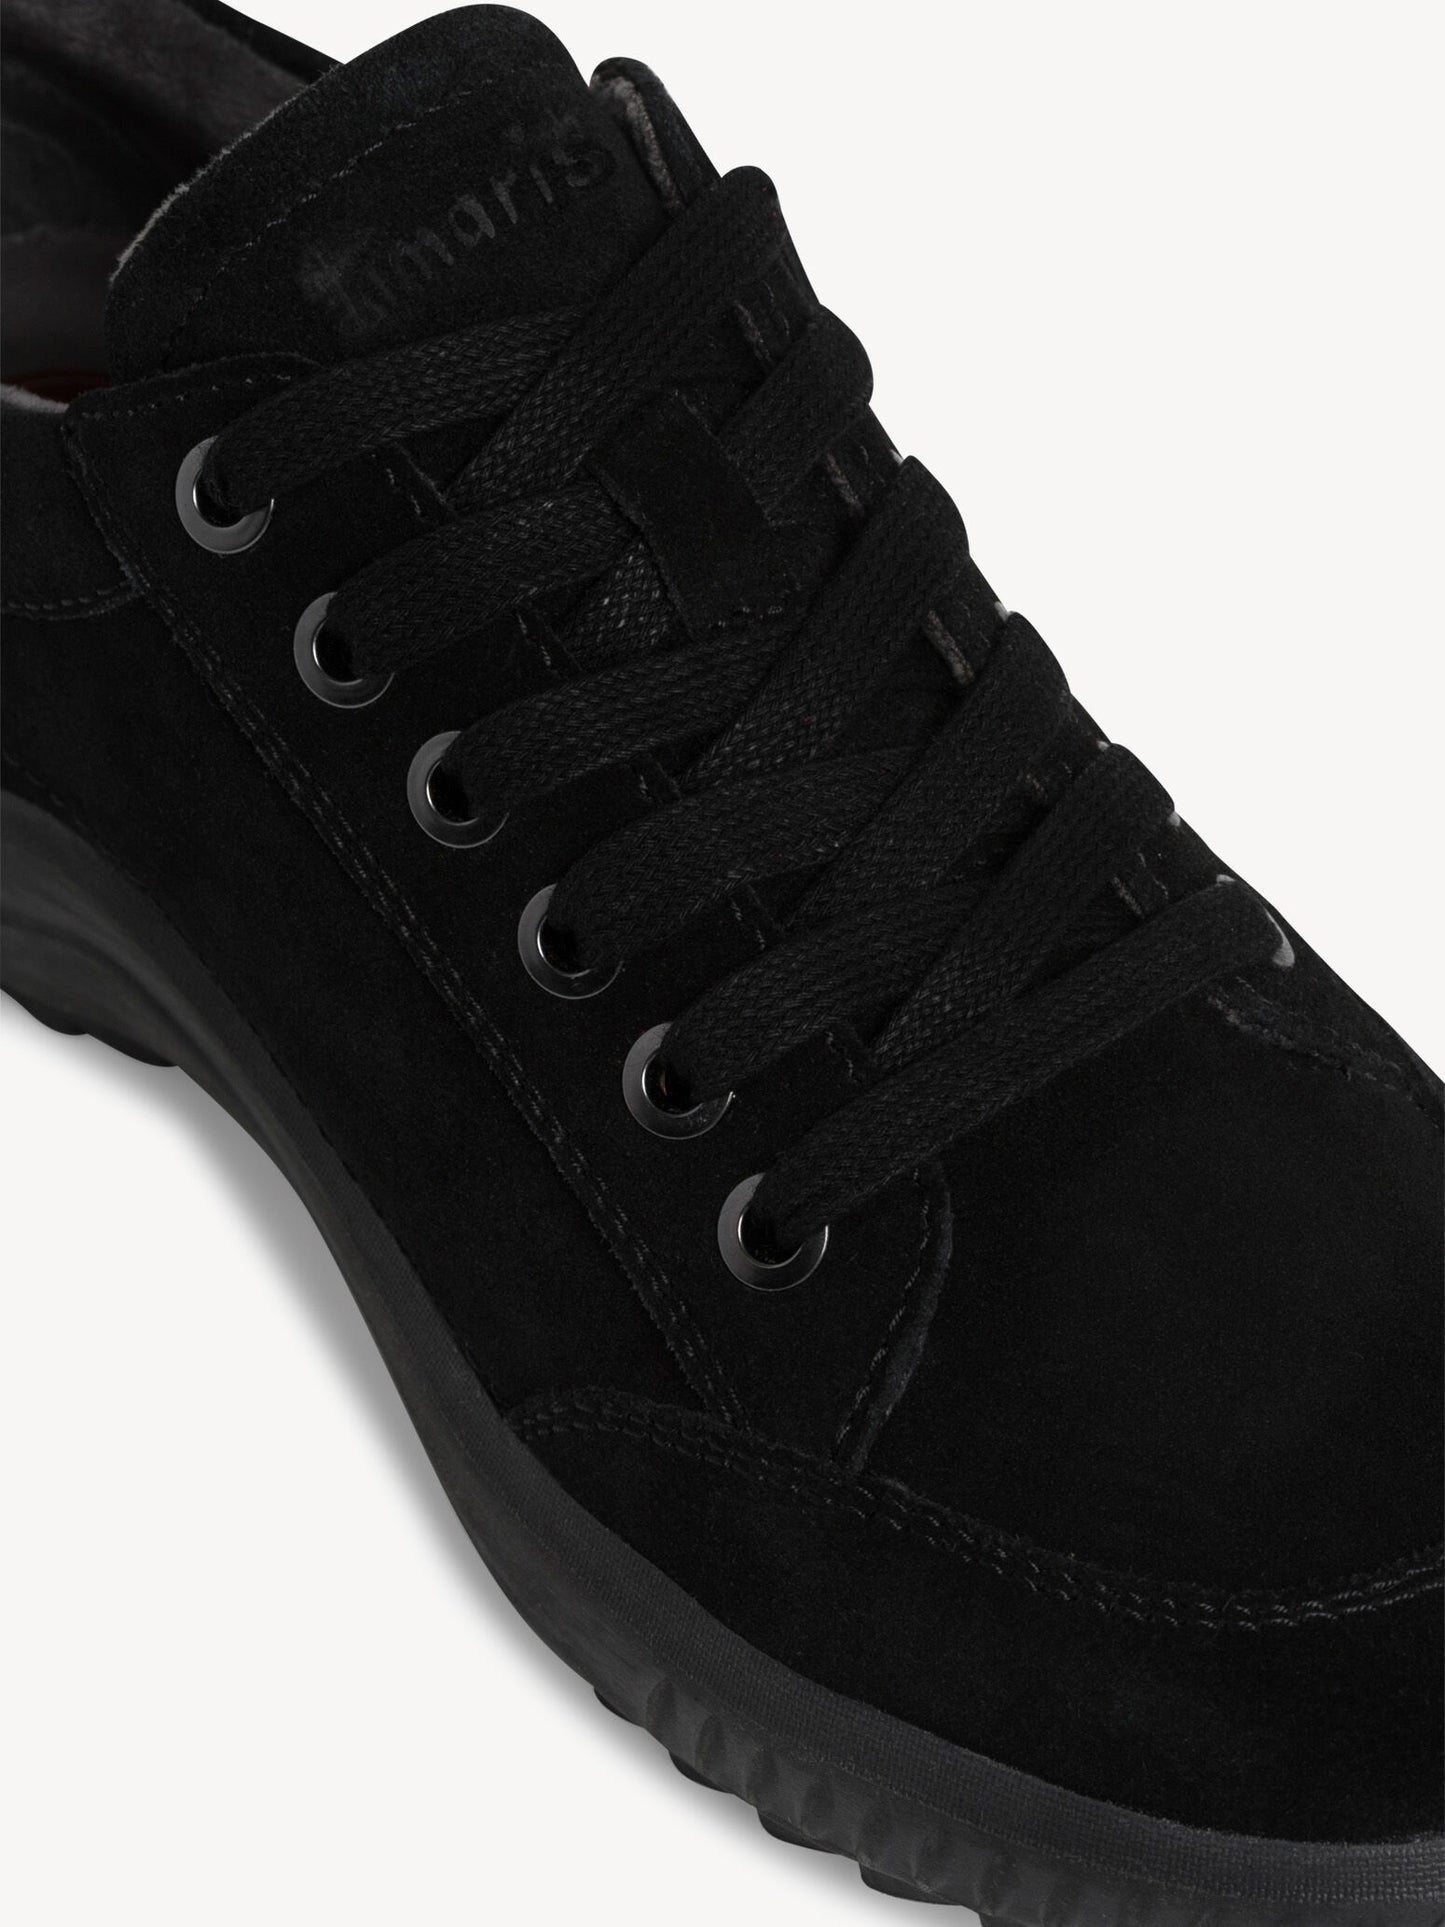 Tamaris Women's 8-8-83706-29 Leather Lace-Up Shoes Black